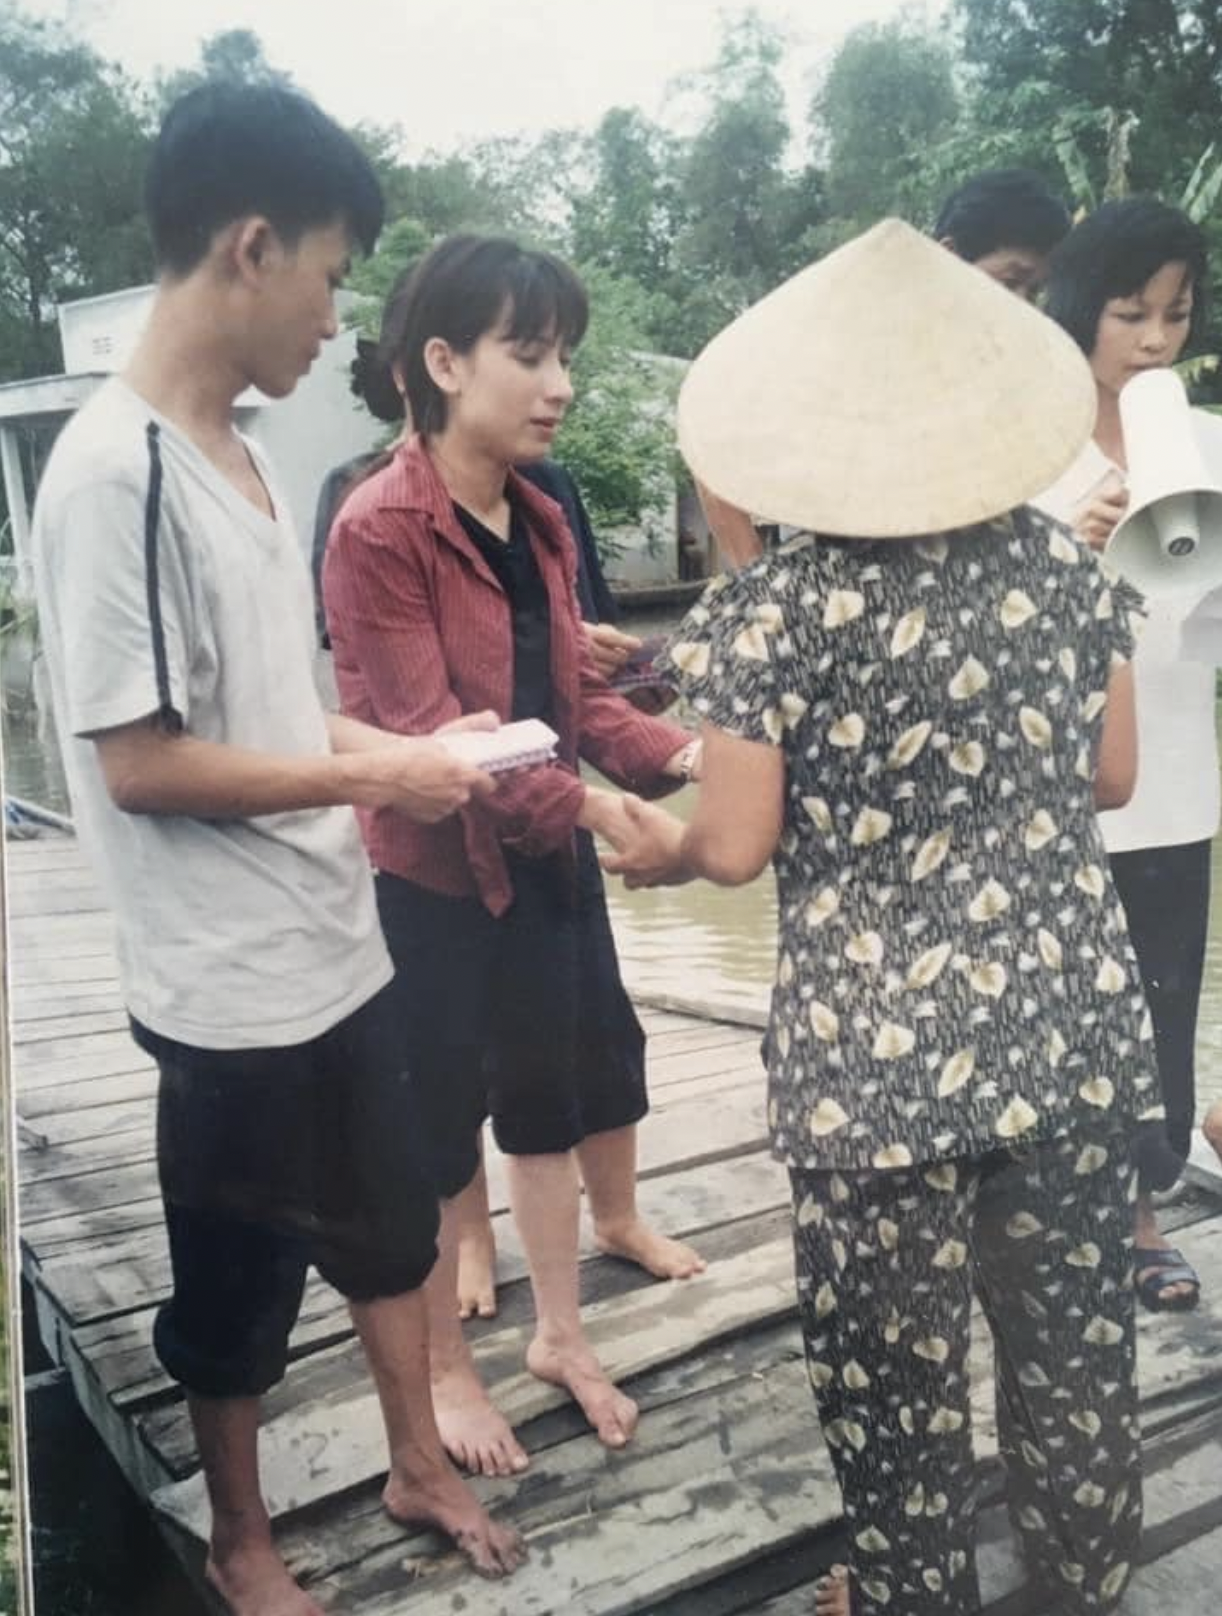 Quản lý nghẹn ngào tiết lộ ước nguyện của Phi Nhung: 'Chị muốn có nhiều sức khỏe để giúp người, giúp đời' - Ảnh 2